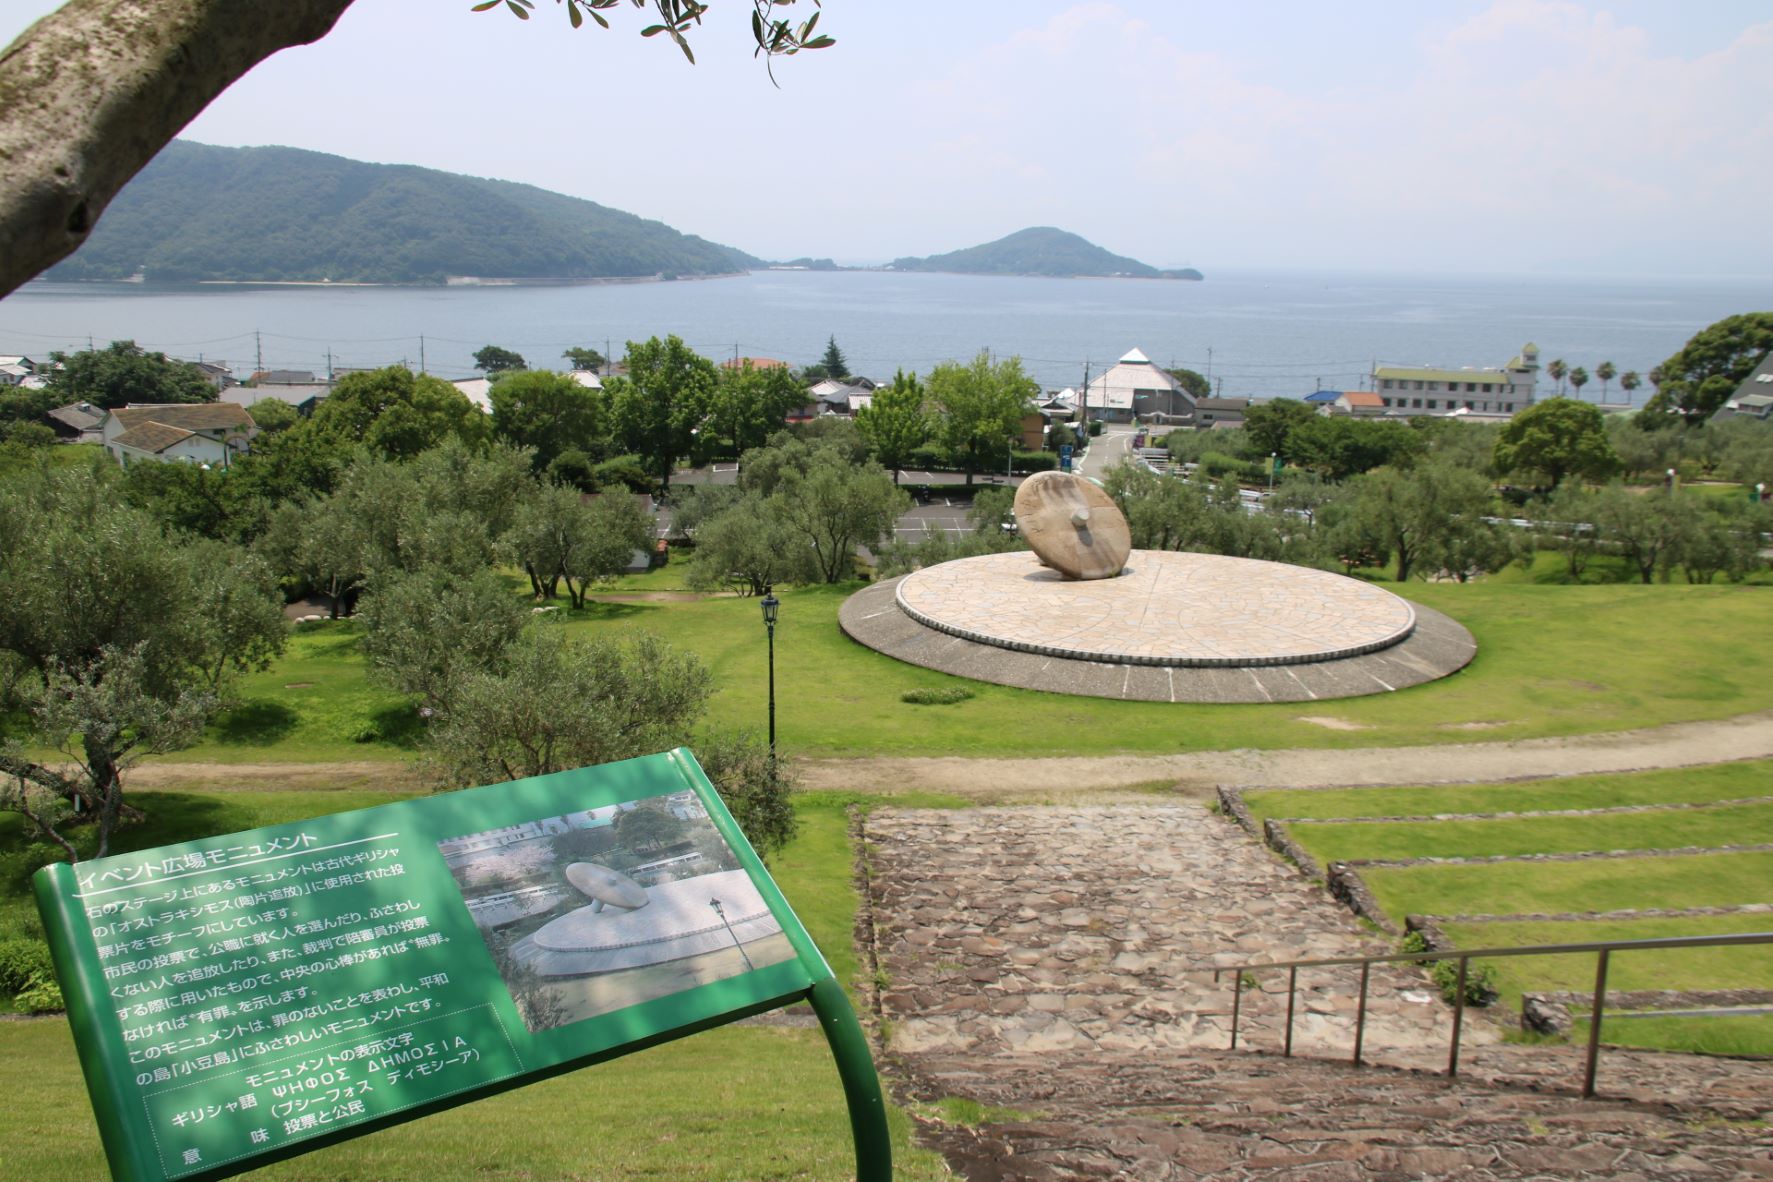 小豆島オリーブ公園,『オストラキシモス』に使用された投票片をモチーフ